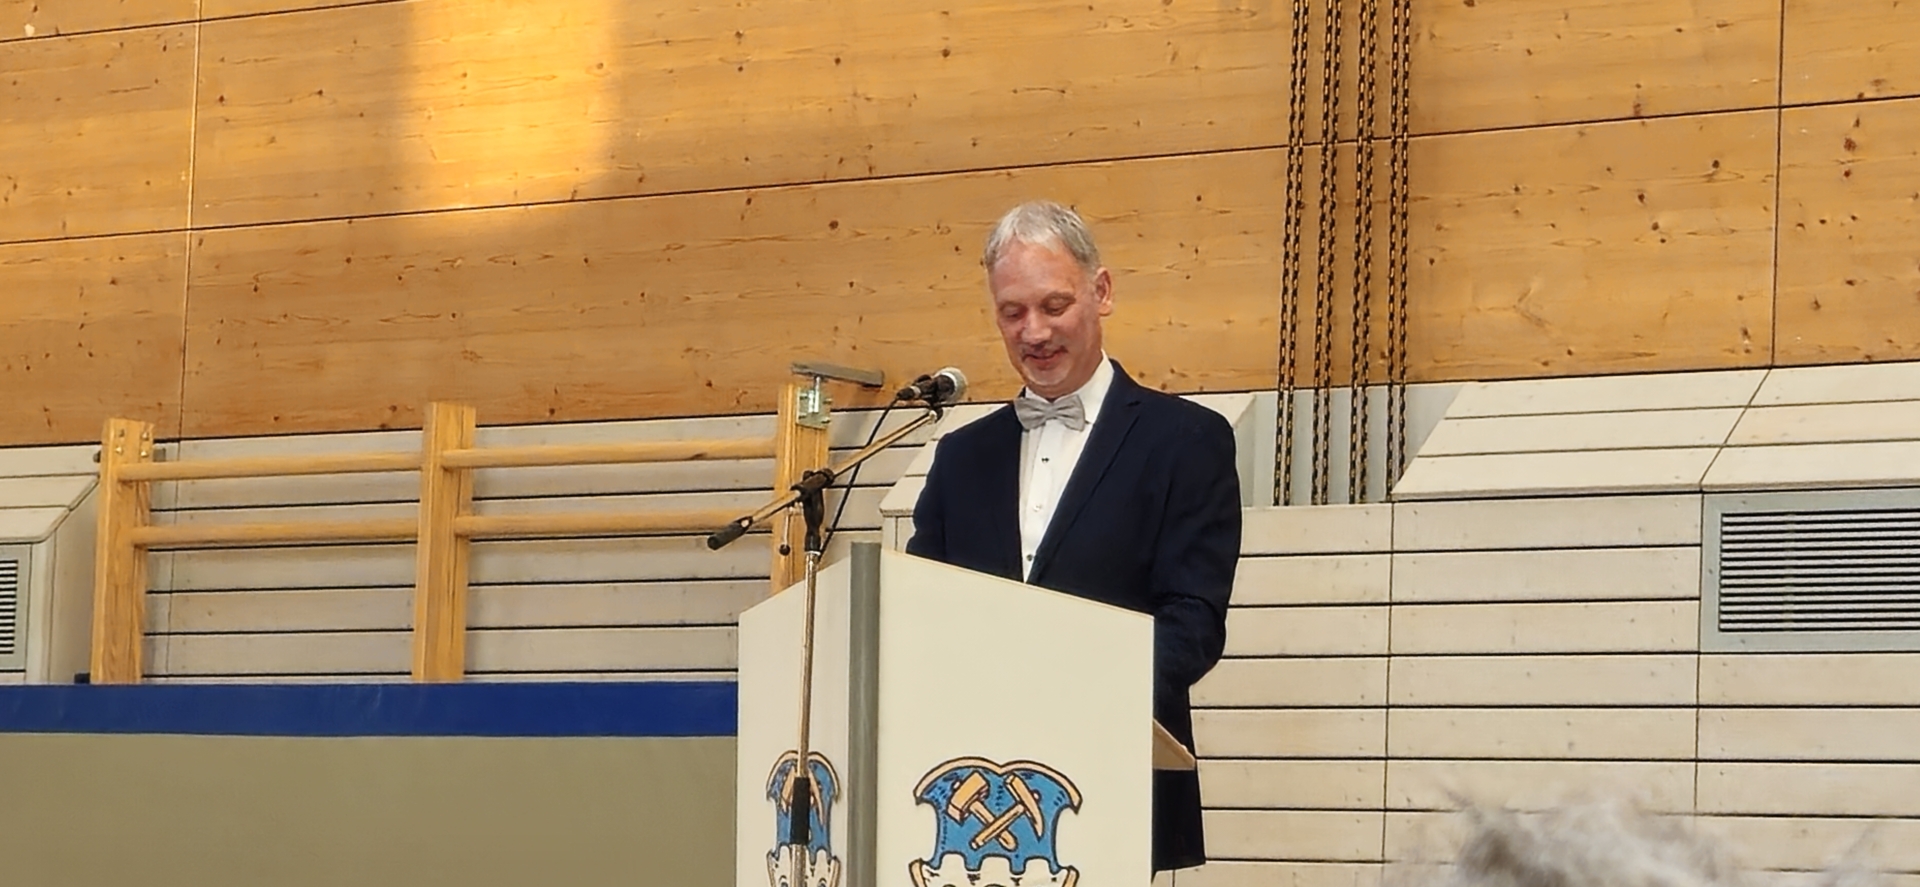 Bild: Bürgermeister Georg Hoffmann